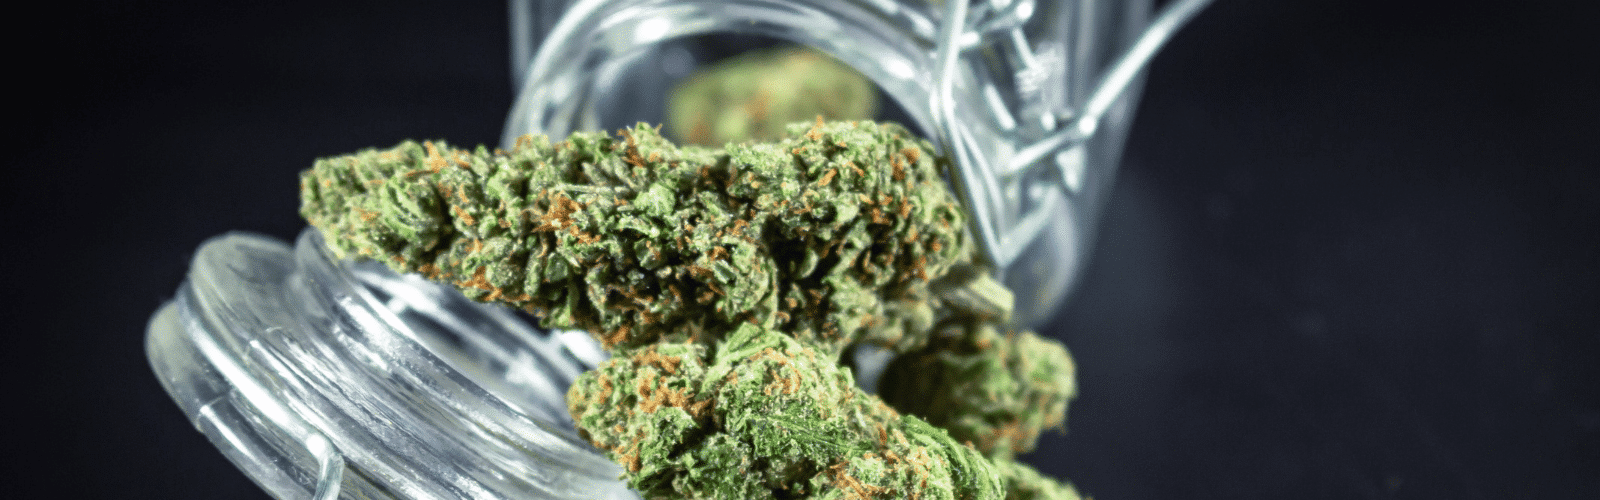 40 por ciento de trenes de cannabis